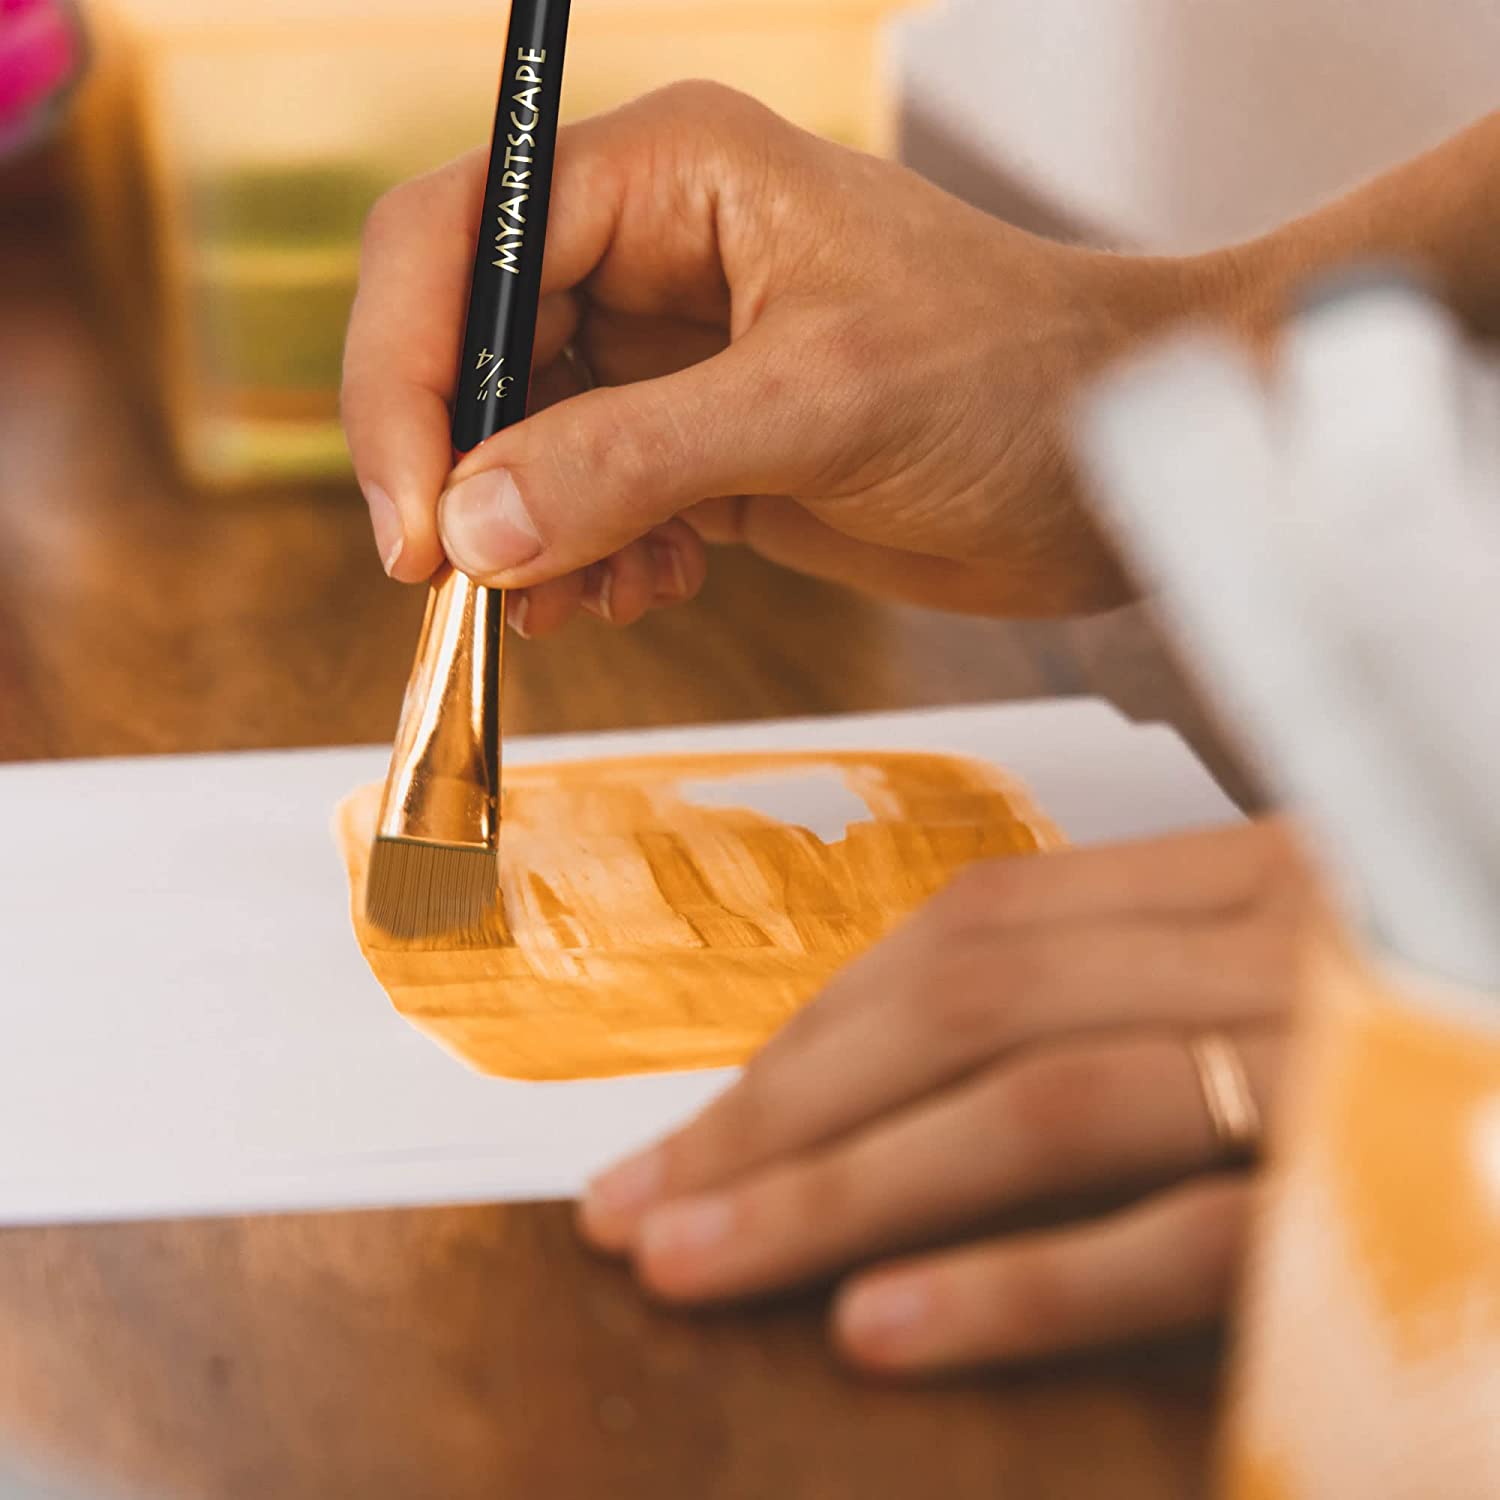 Long Handle Paint Brush, Set of 15 Art Brushes – MyArtscape